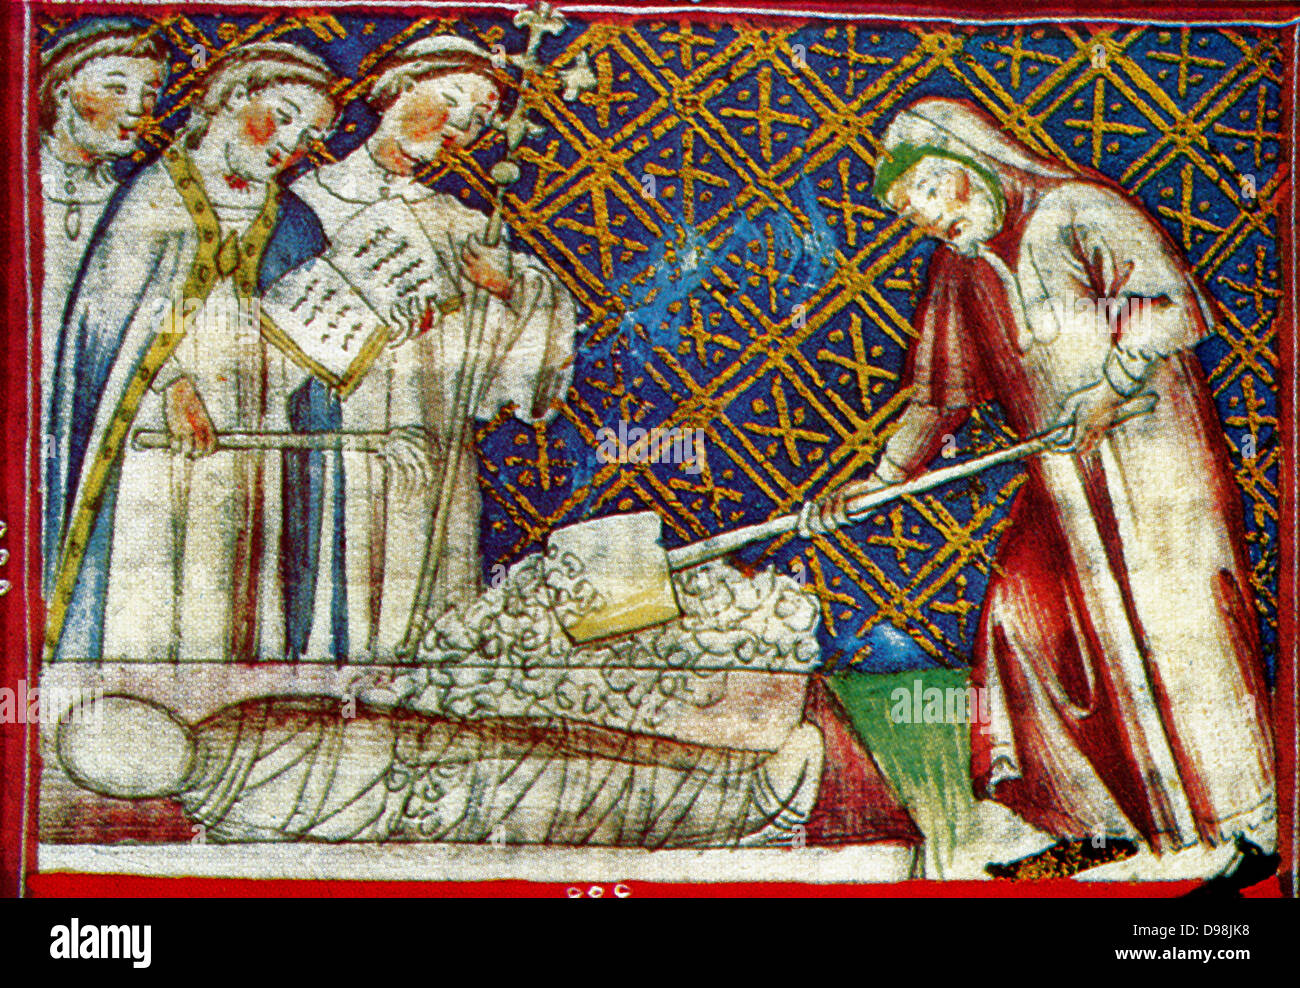 Scena dal XIV secolo, manoscritto illustrato i breviari d'amor. Essa illustra i sette atti di misericordia. Qui è mostrato seppellire i morti Foto Stock